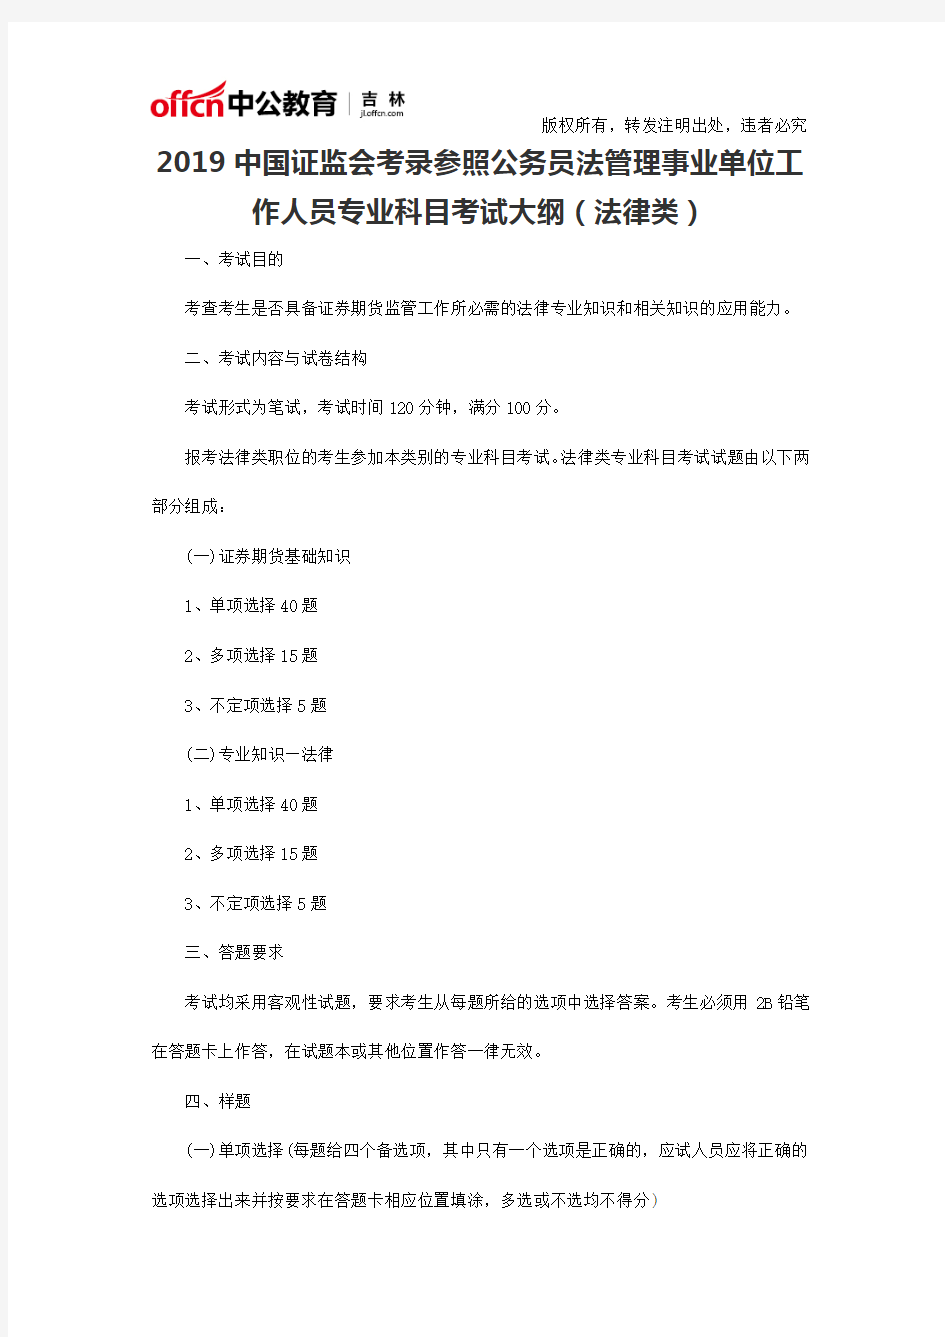 2019中国证监会考录参照公务员法管理事业单位工作人员专业科目考试大纲(法律类)